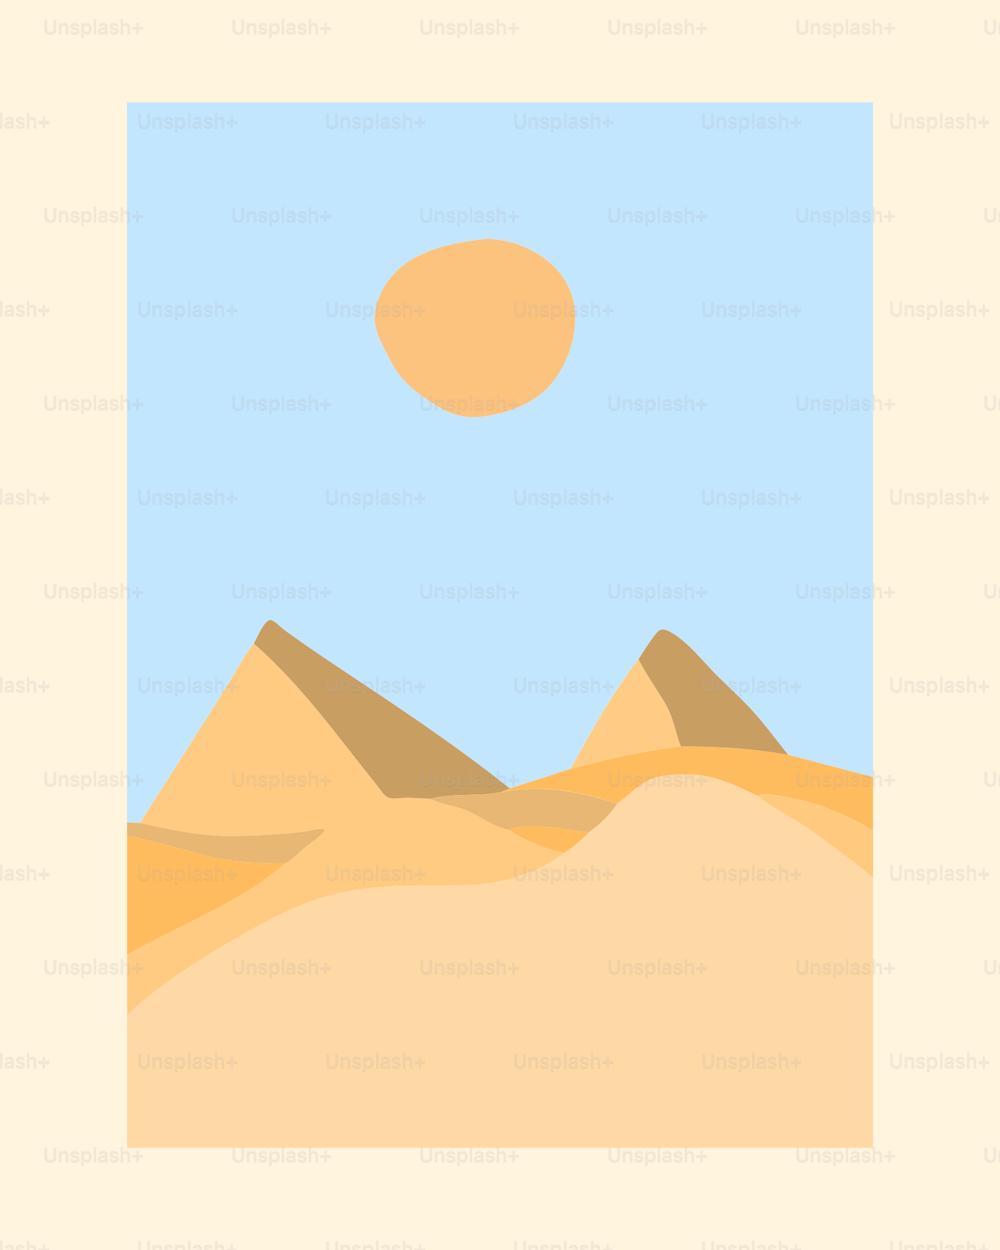 Ein Bild von einer Wüste mit einer Sonne am Himmel